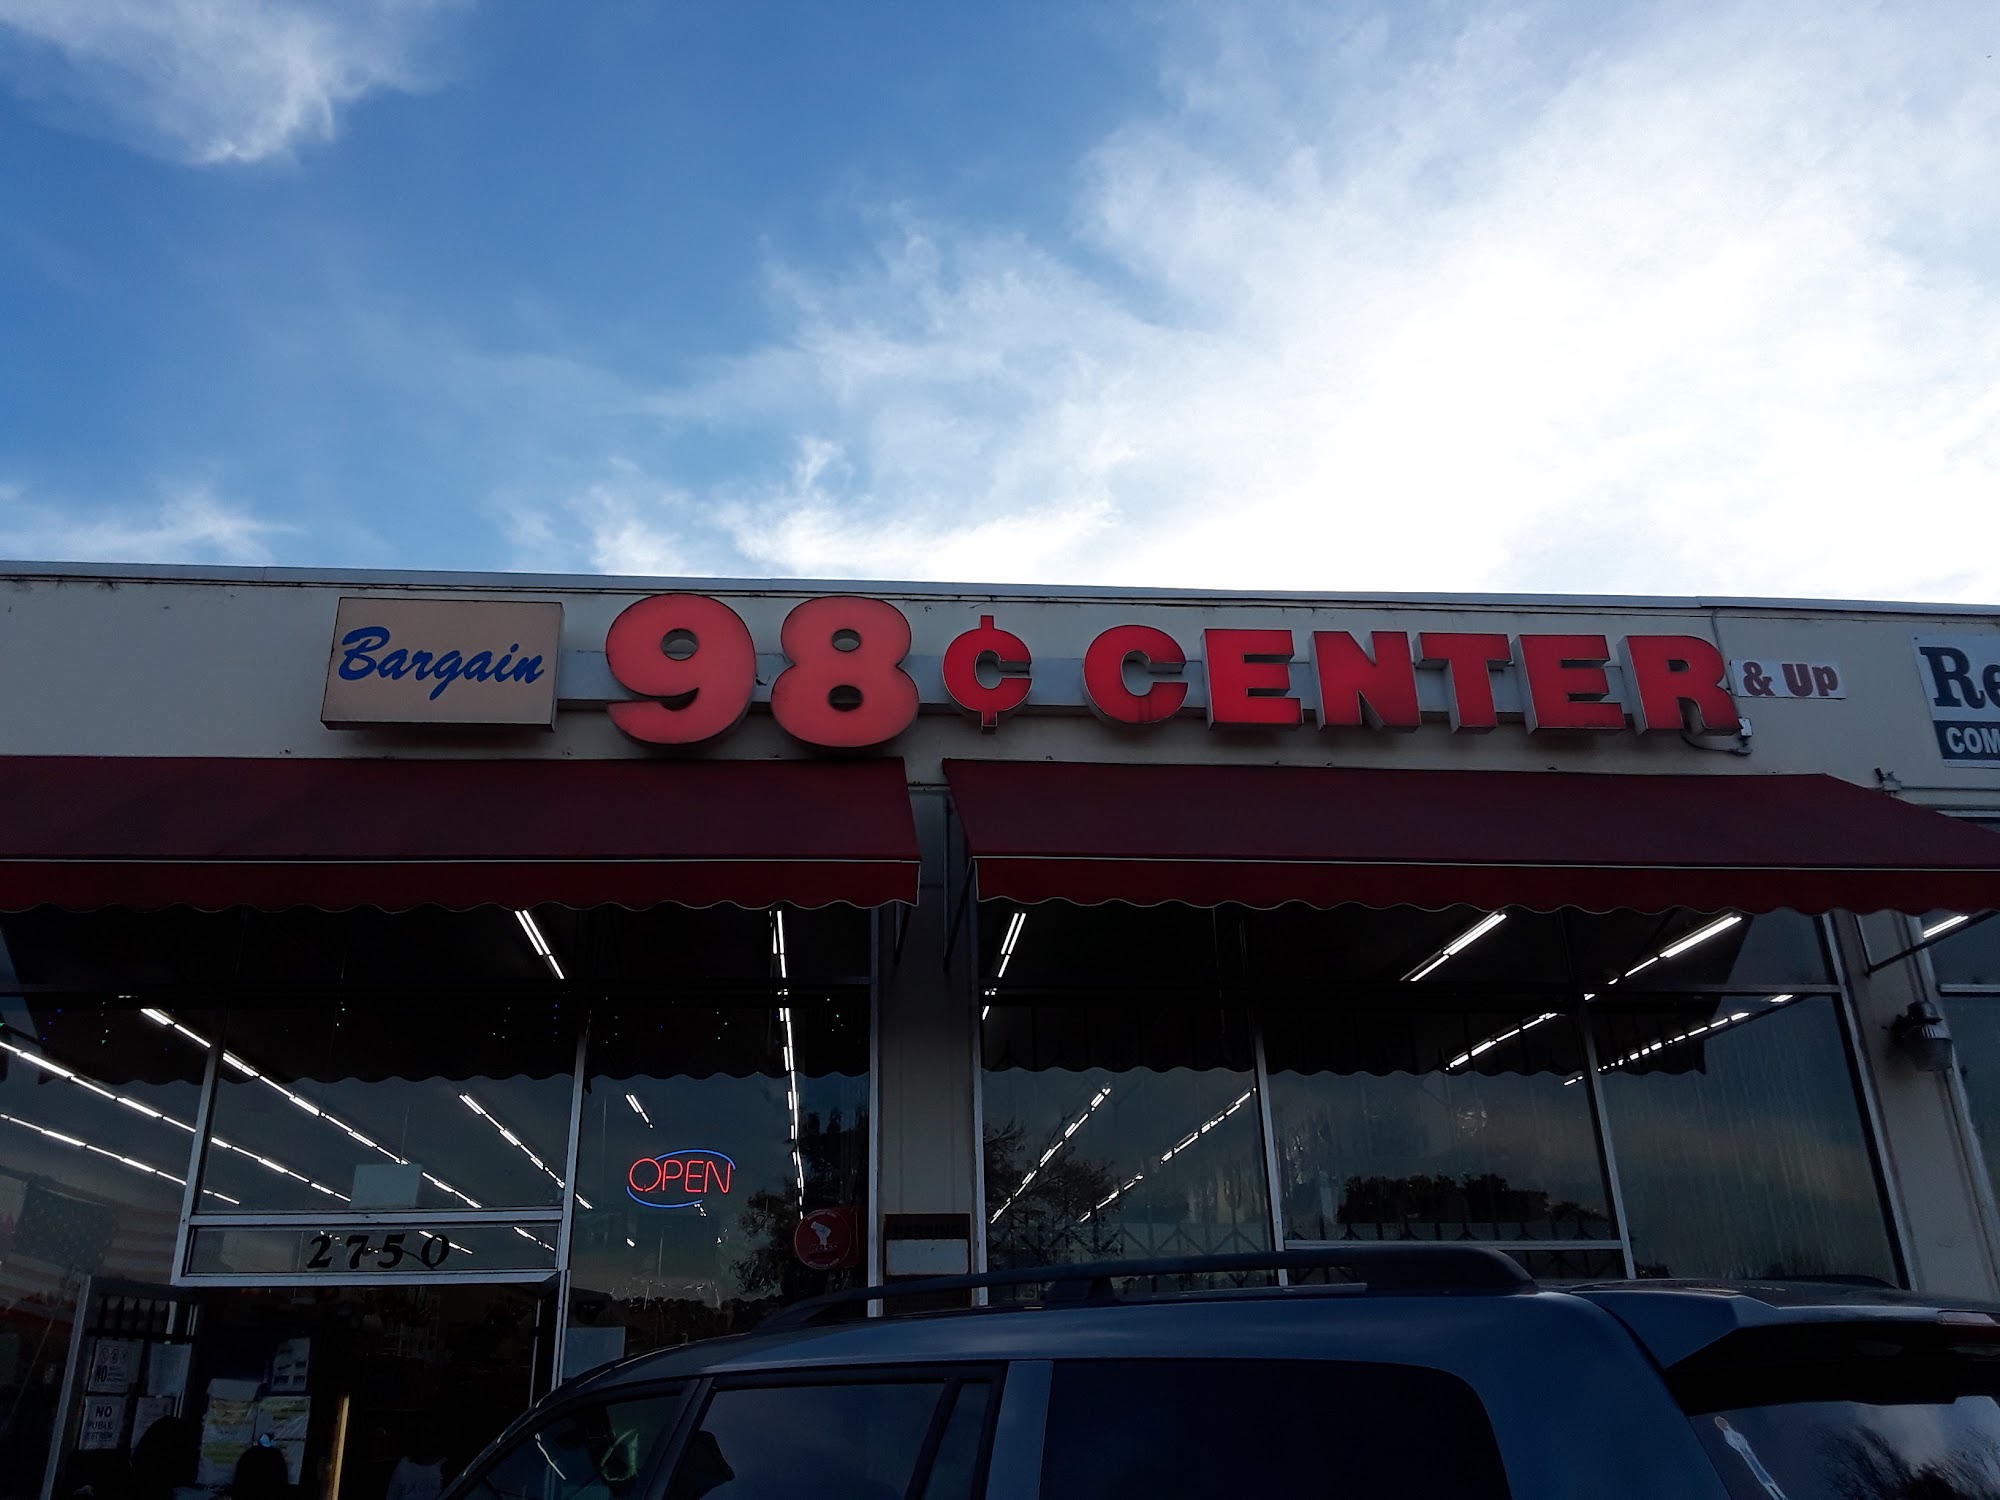 Bargain 98 Center